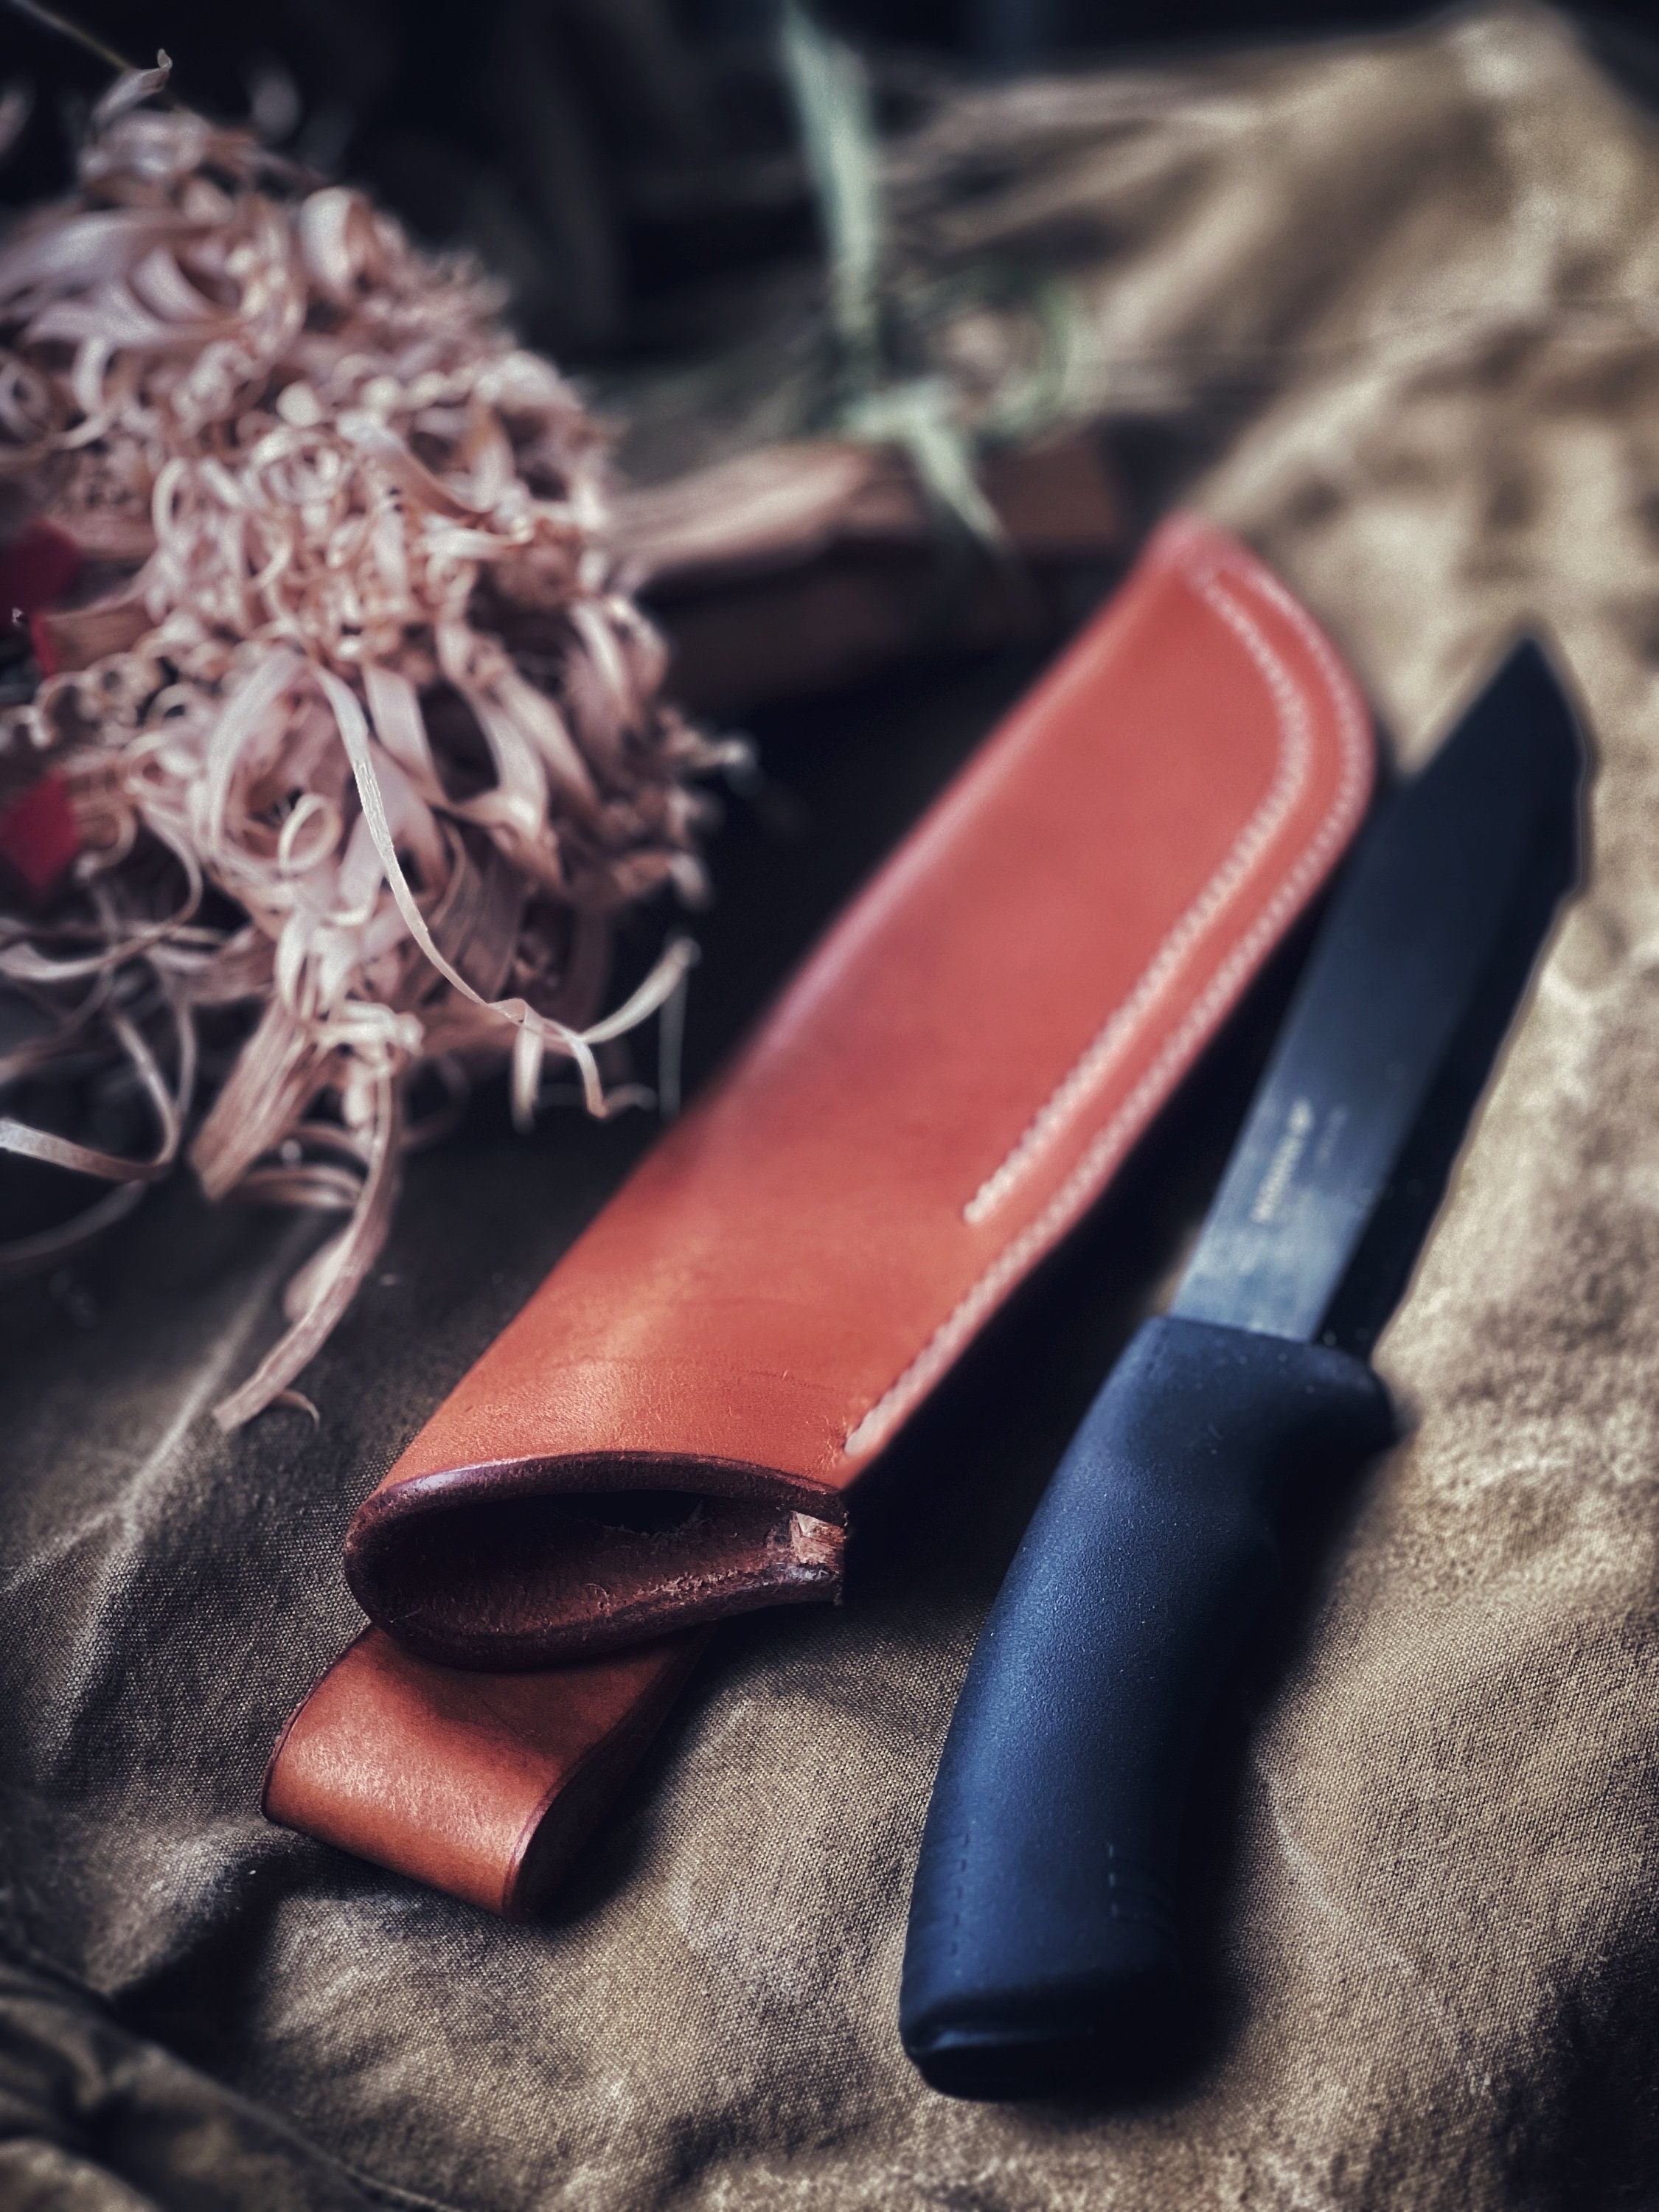 BushGear LeatherWorks - Mora Garberg custom leather sheath with dangler and  firesteel loop. #mora #morakniv #moraknives #moraknife #moraofsweden  #moragarberg #morakansbol #bushcraft #survival #bushcraftknife #knifesheath  #bushcraftgear #knifeporn